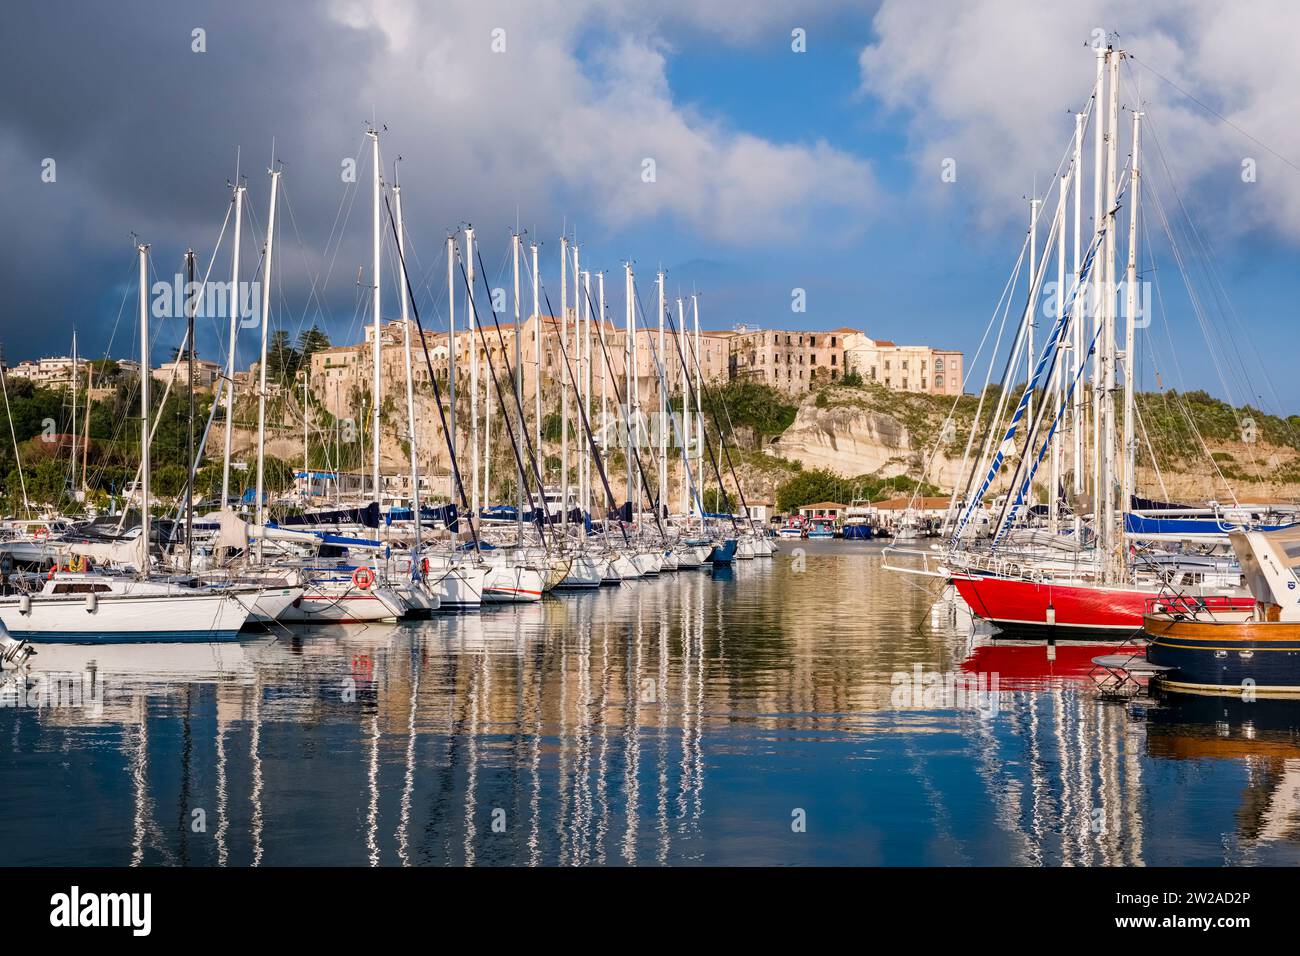 Segelboote vor Anker im Hafen und Jachthafen von Tropea, den Häusern der Stadt auf einem Felsen in der Ferne. Stockfoto